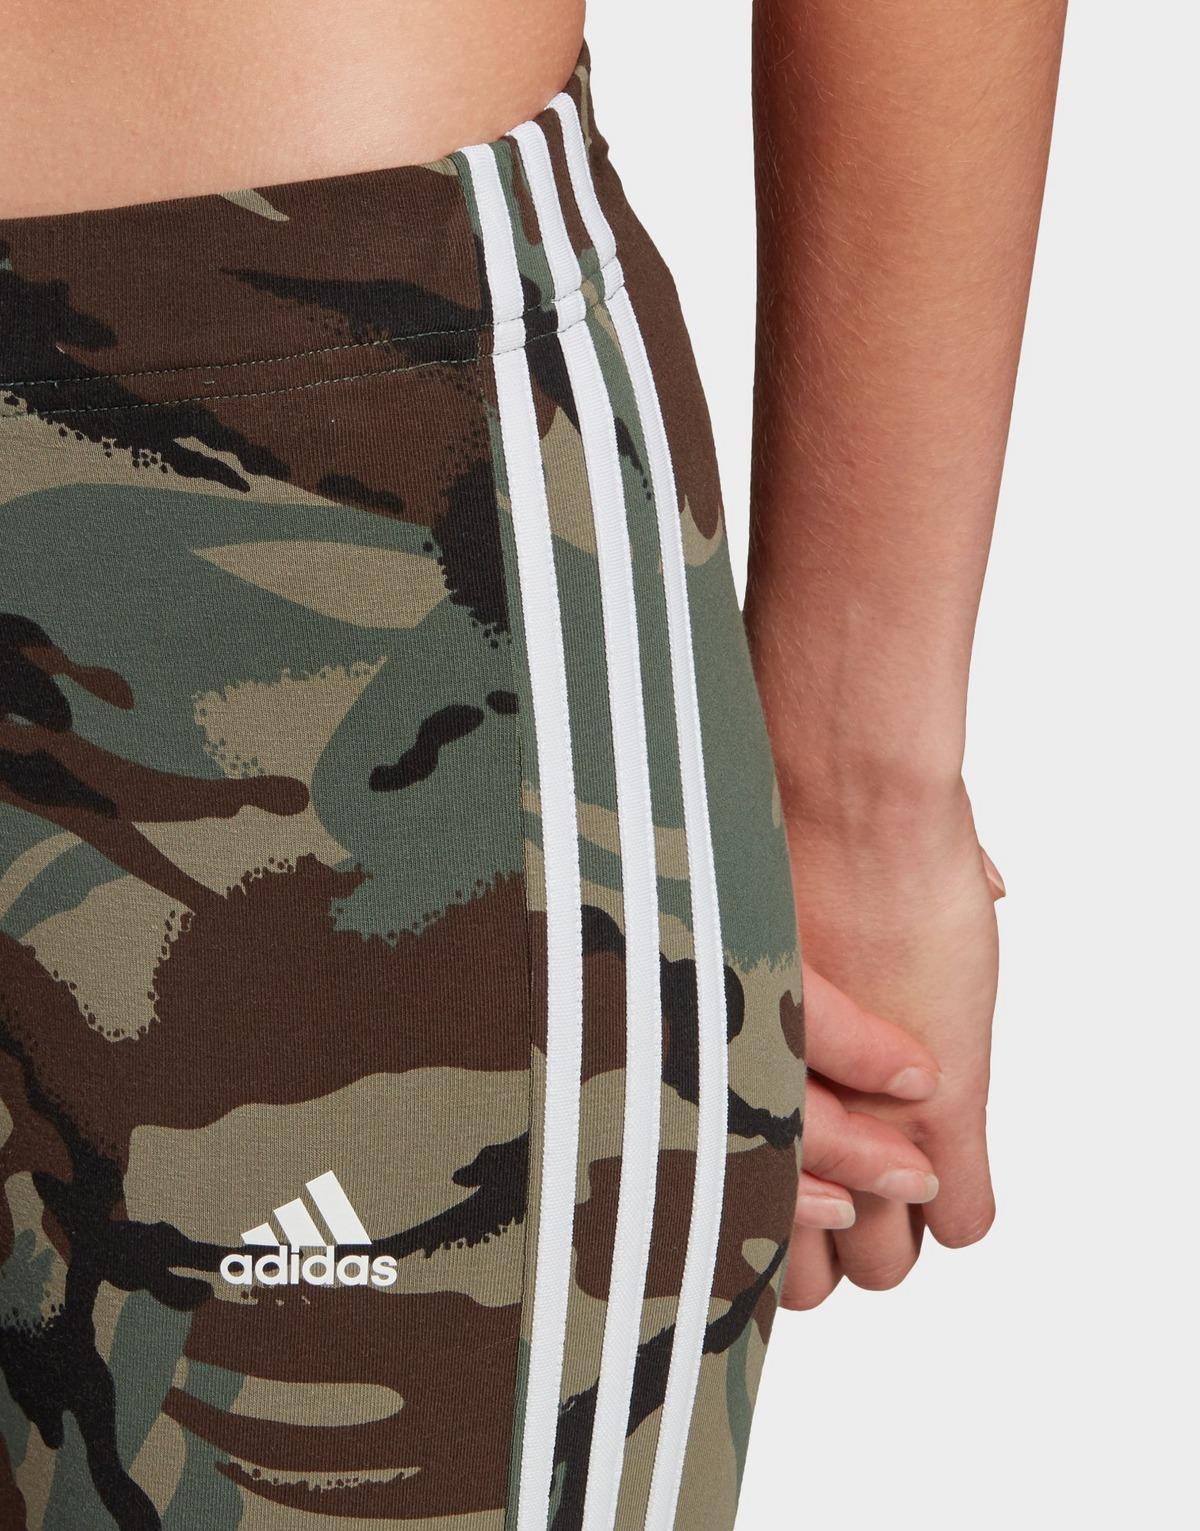 adidas Originals Cotton Essentials Camouflage 3-stripes 7/8 Leggings in ...